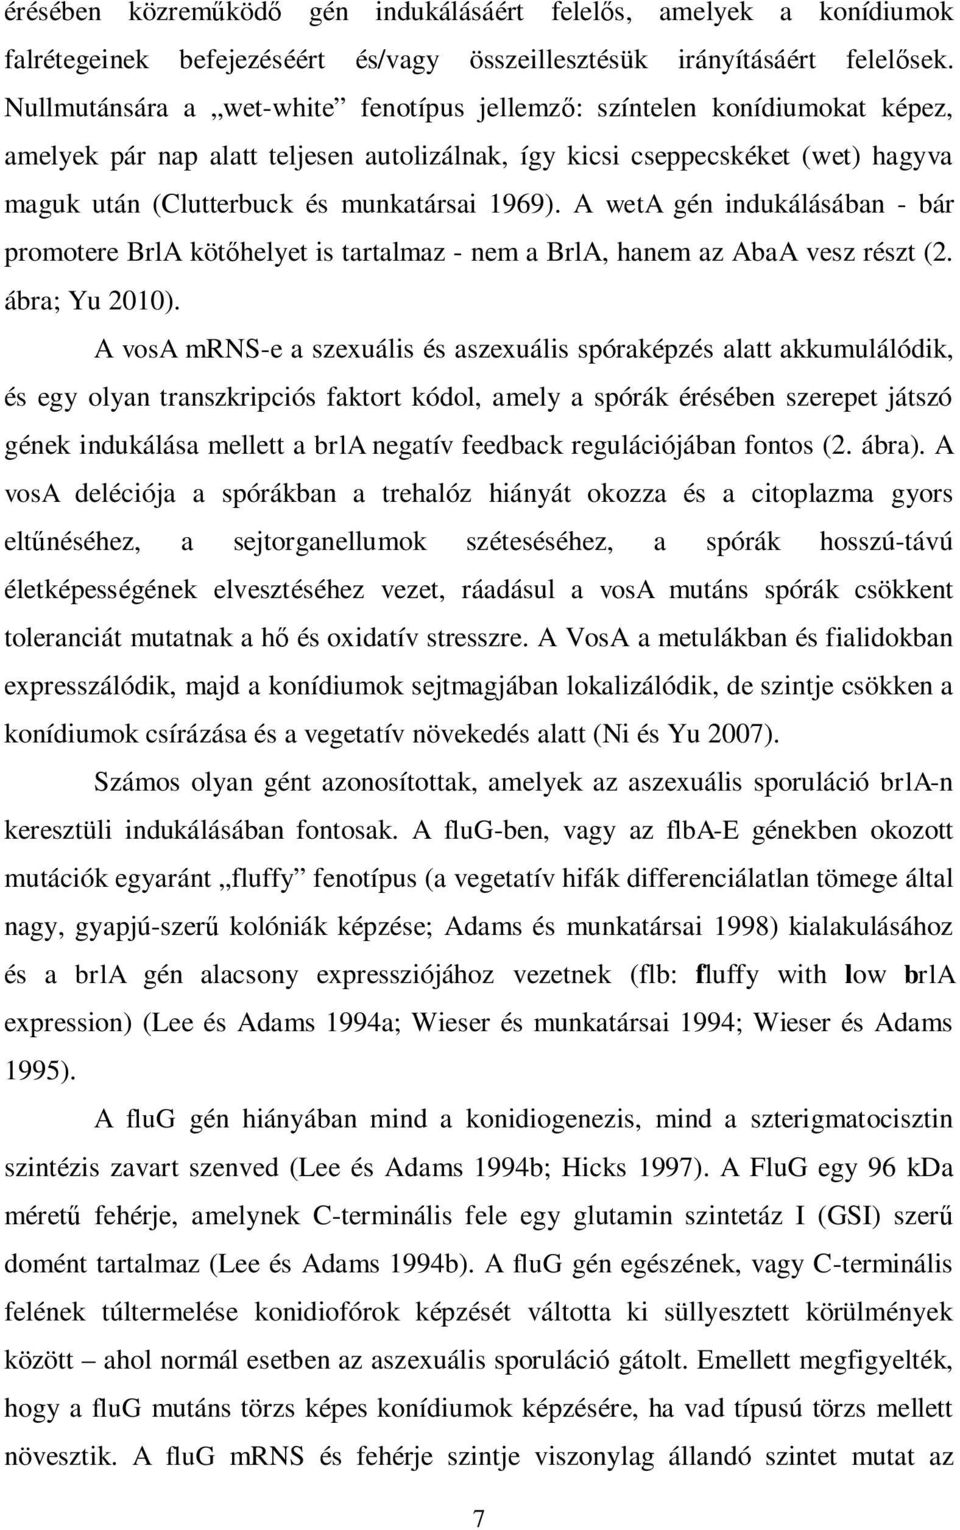 1969). A weta gén indukálásában - bár promotere BrlA köt helyet is tartalmaz - nem a BrlA, hanem az AbaA vesz részt (2. ábra; Yu 2010).